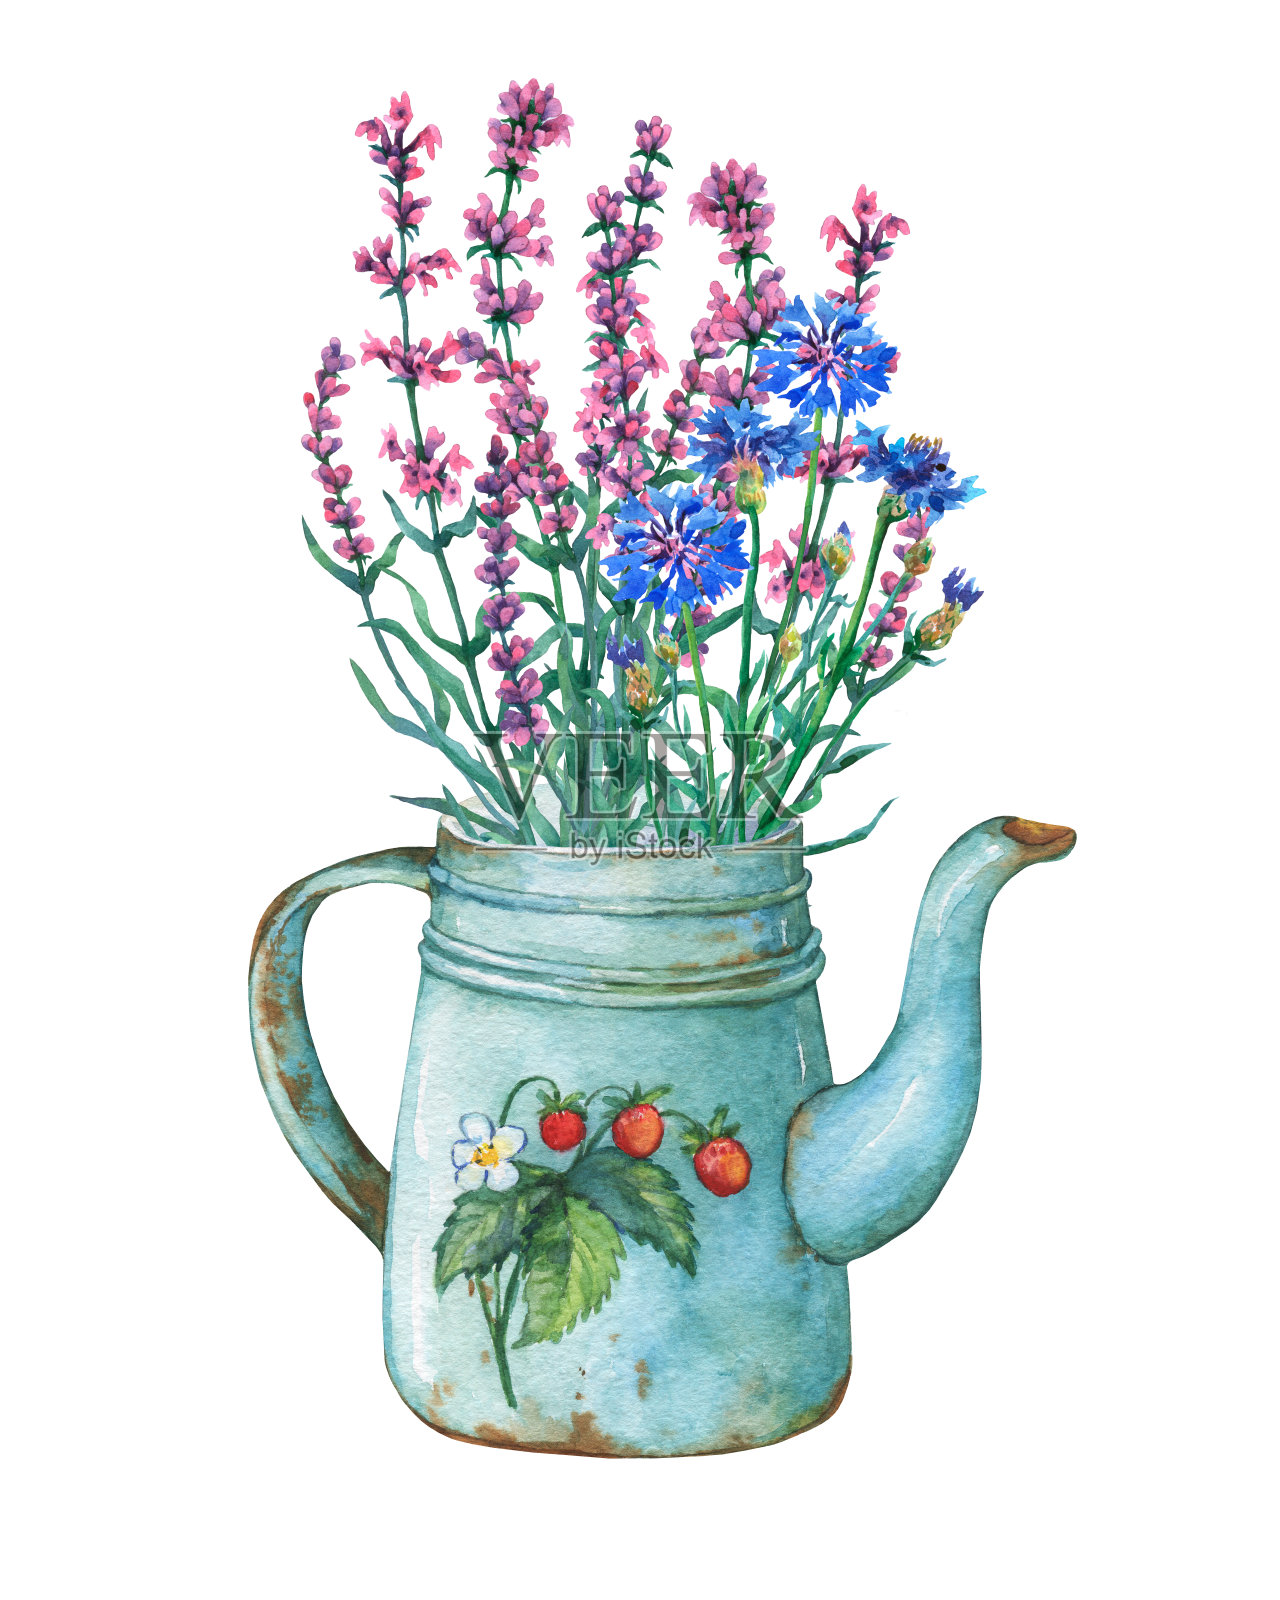 复古蓝色金属茶壶草莓图案和花束。手绘水彩画在白色的背景。插画图片素材